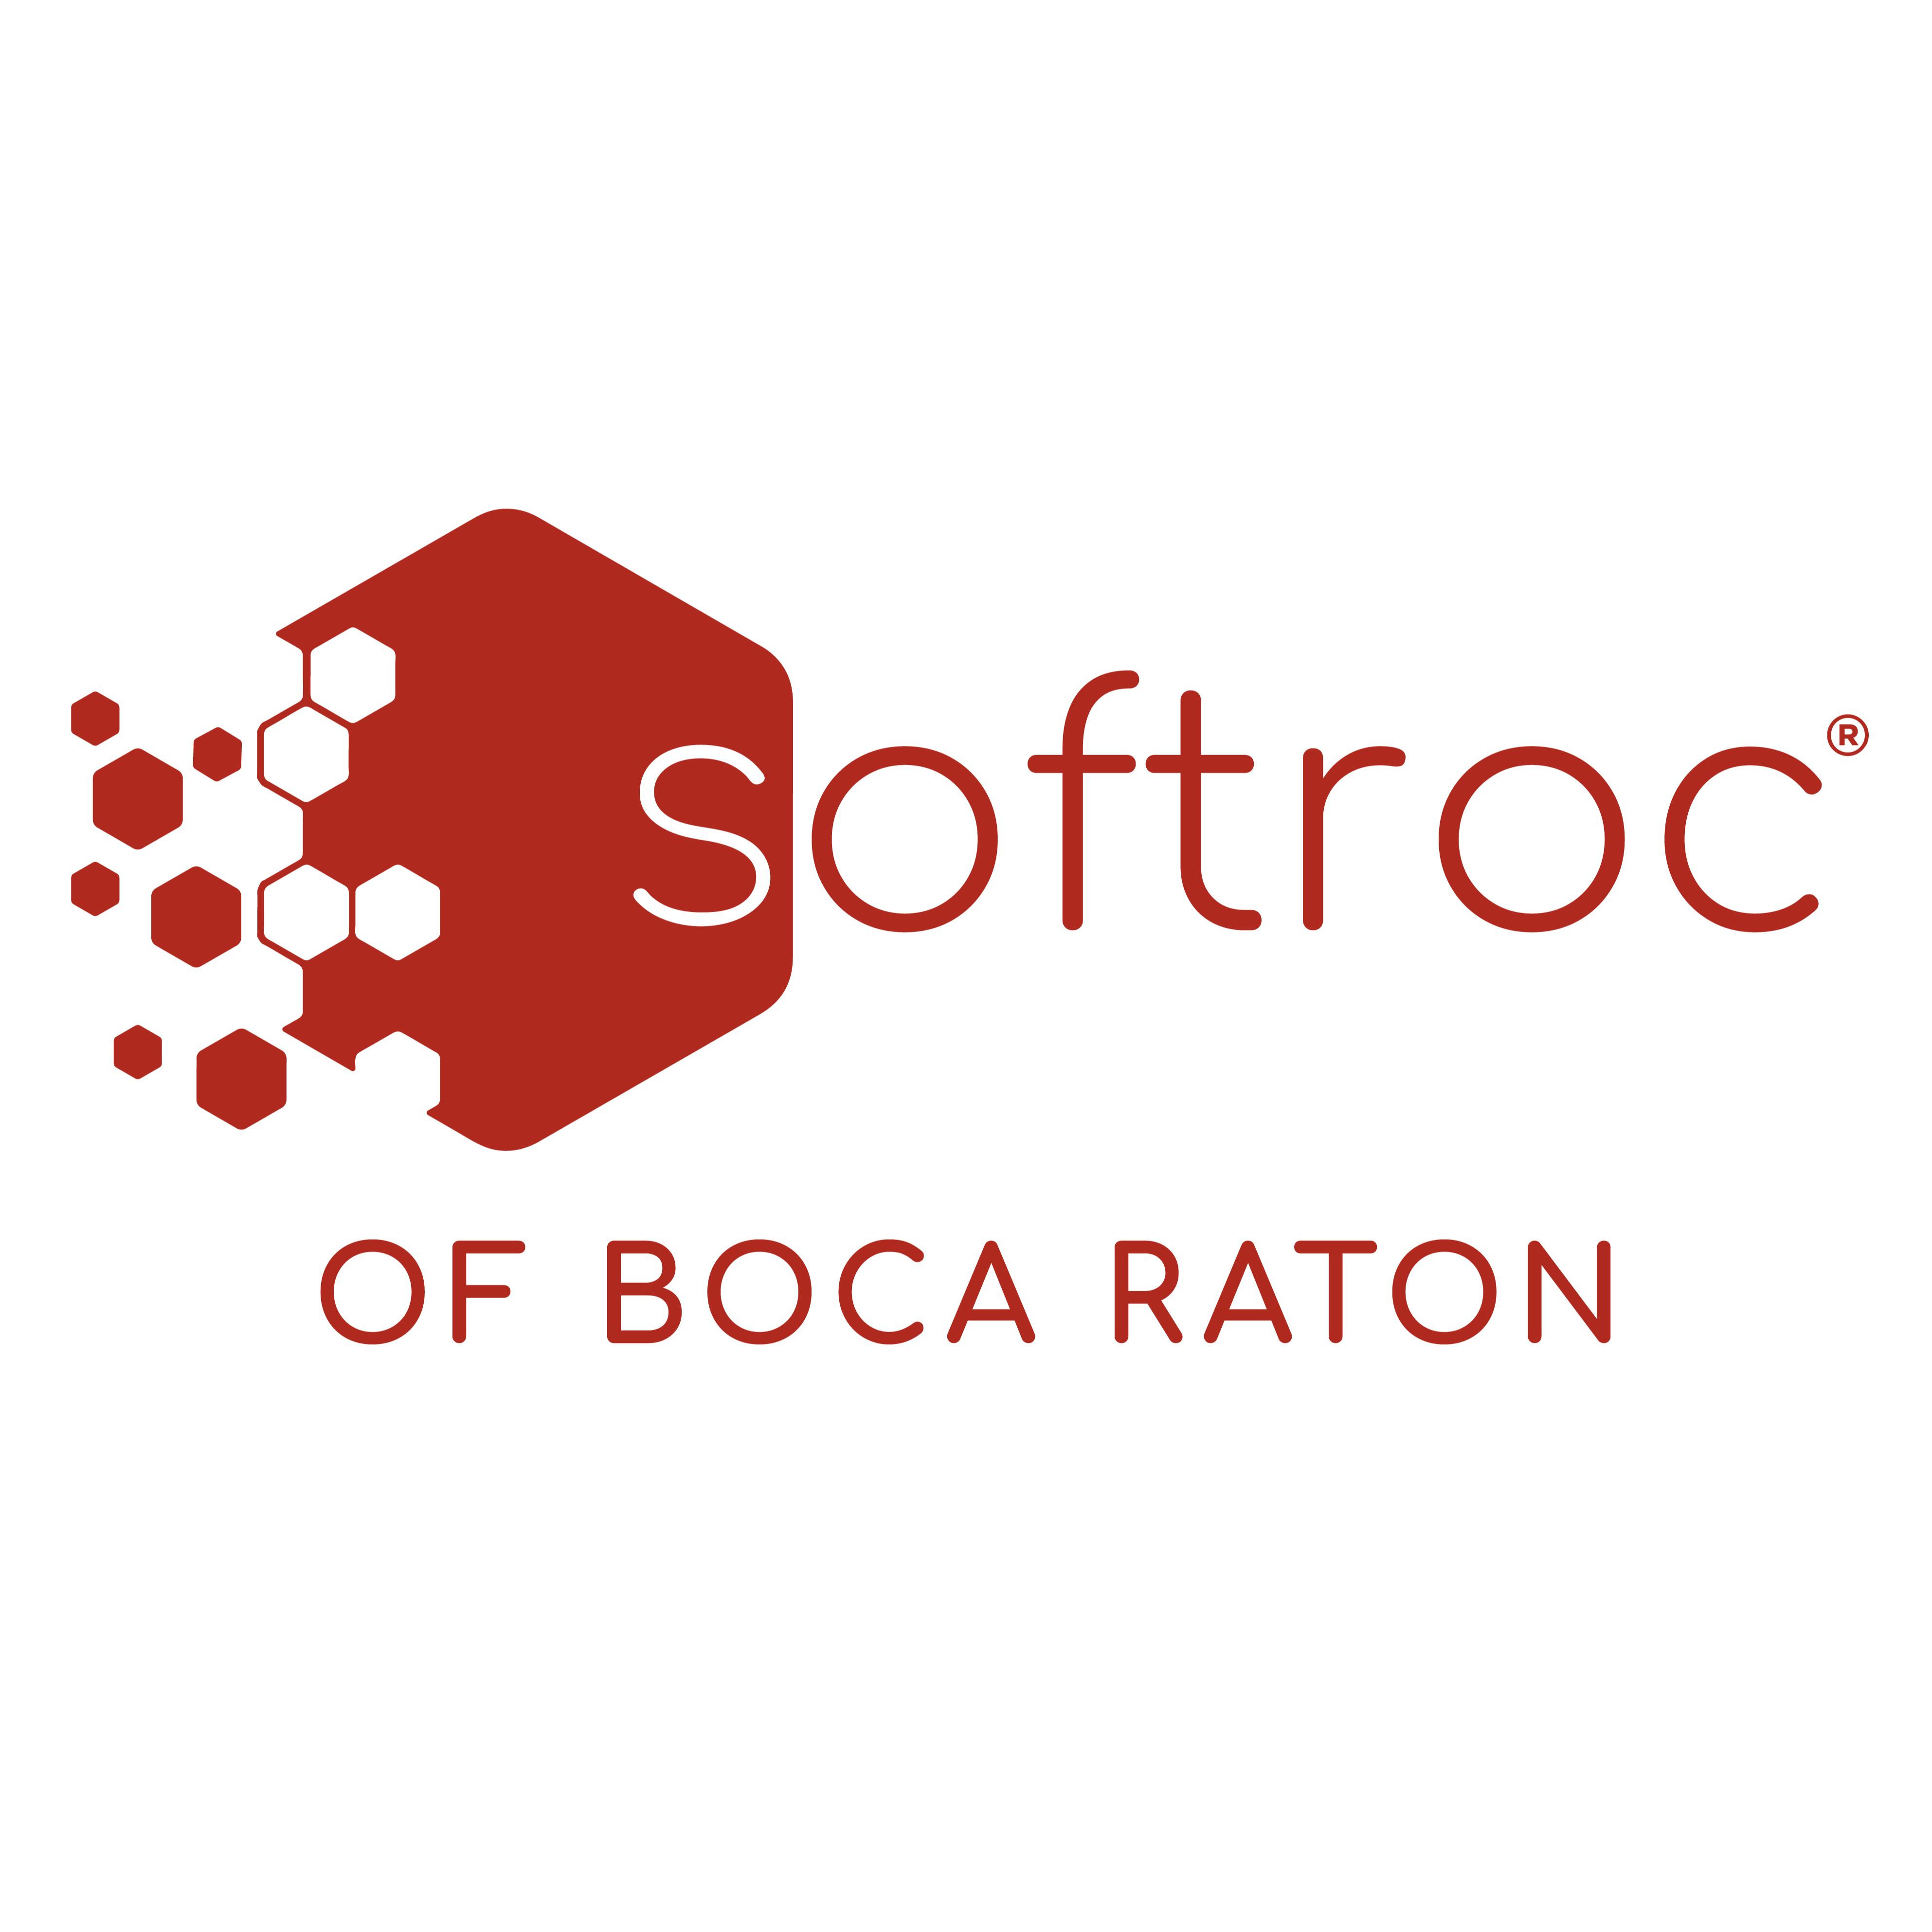 Softroc of Boca Raton